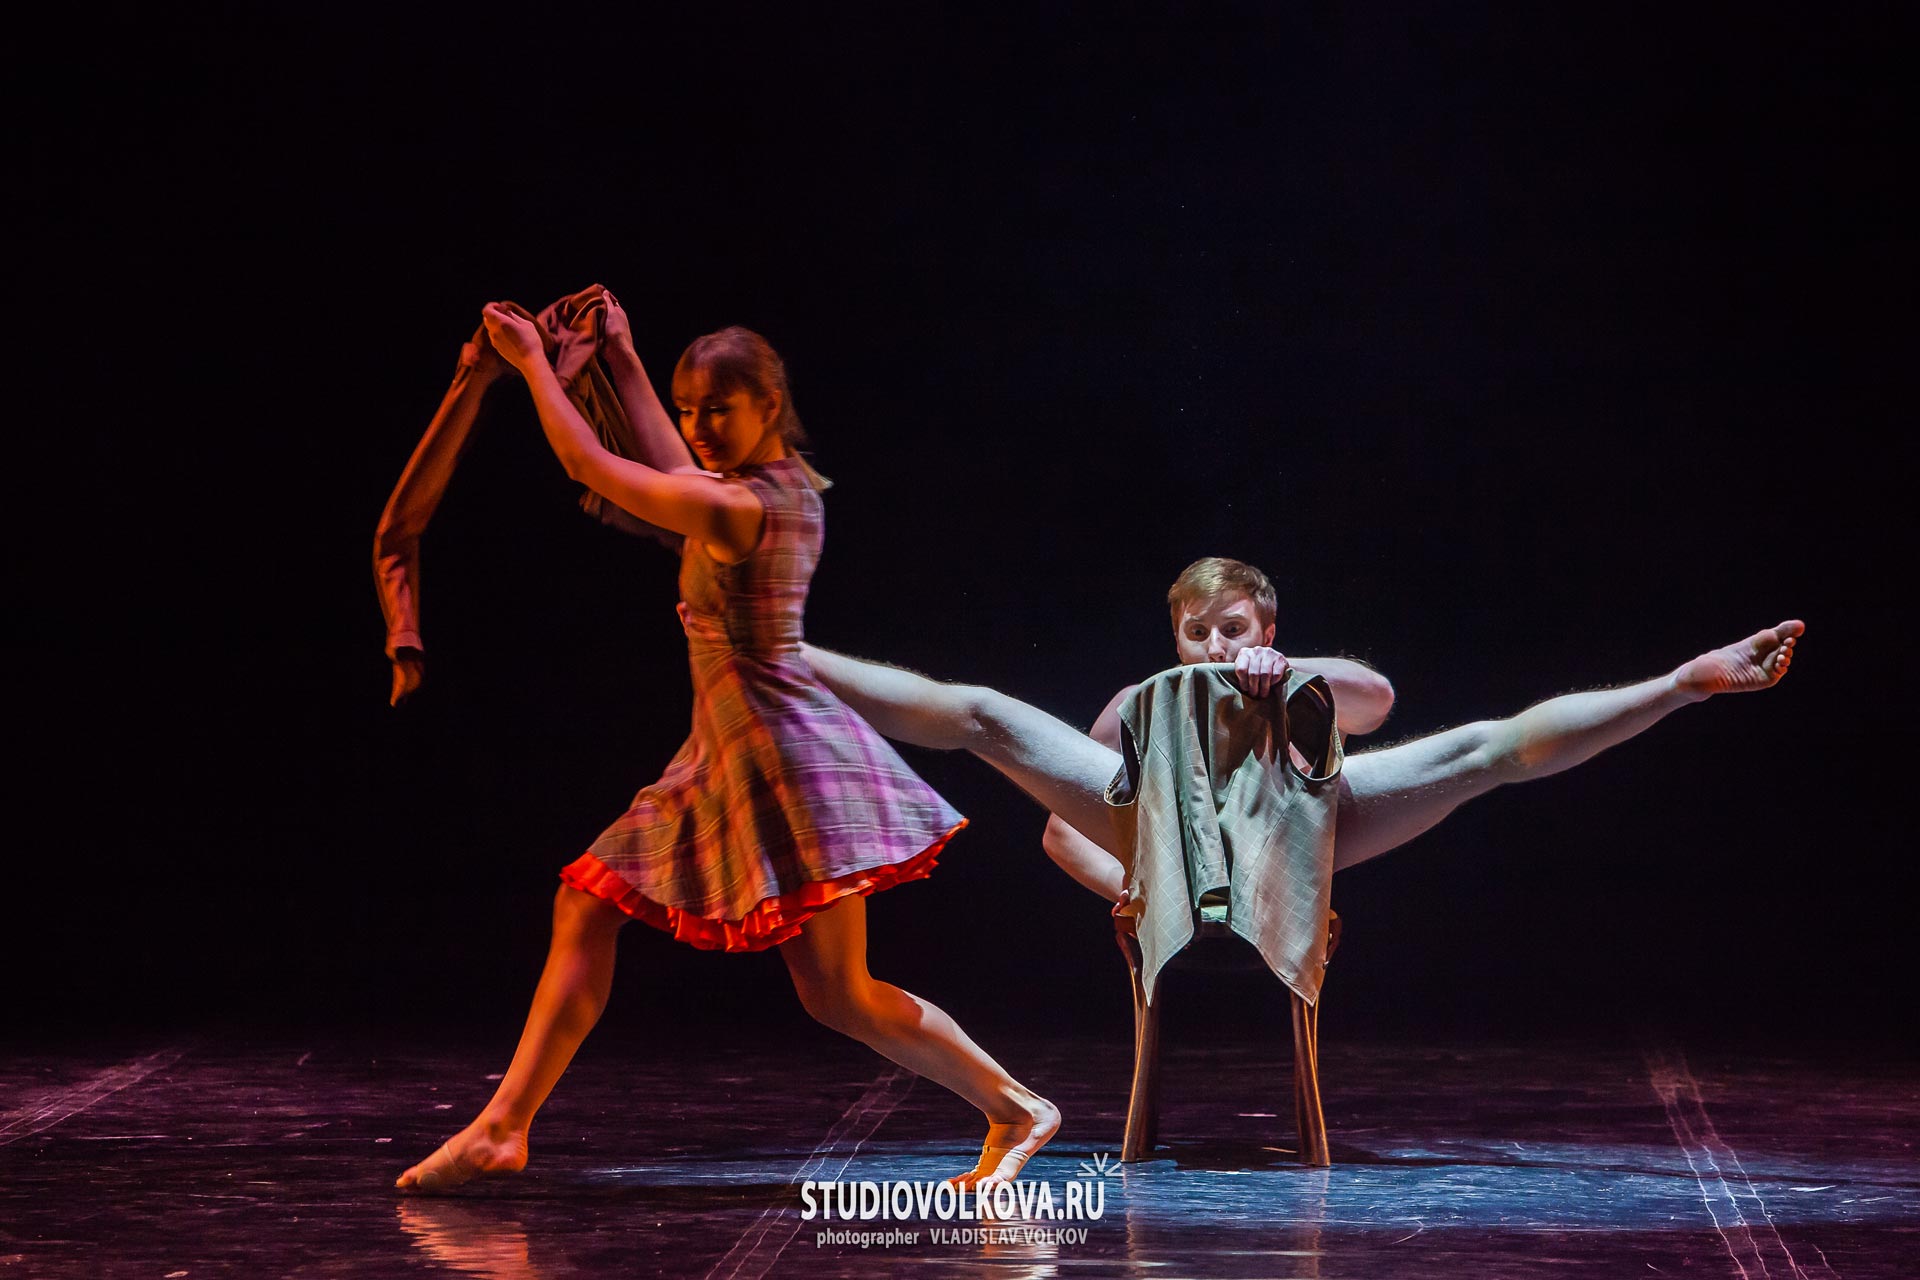 XVI Всероссийский фестиваль-конкурс современного танца. фотограф Владислав ВОЛКОВ